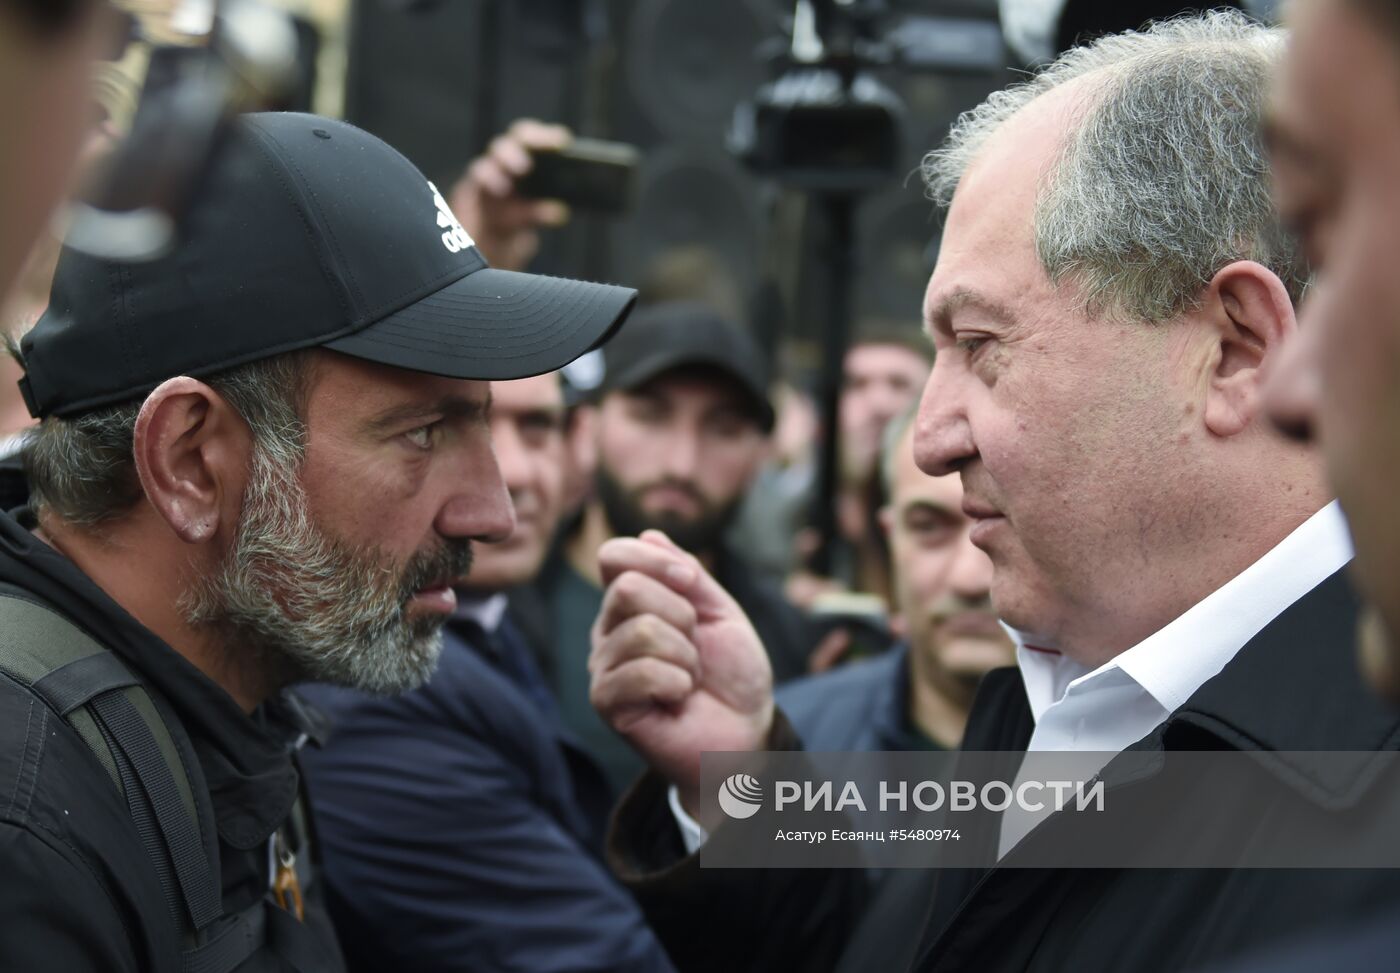 Президент Армении А. Саркисян встретился с лидером протестного движения Н. Пашиняном